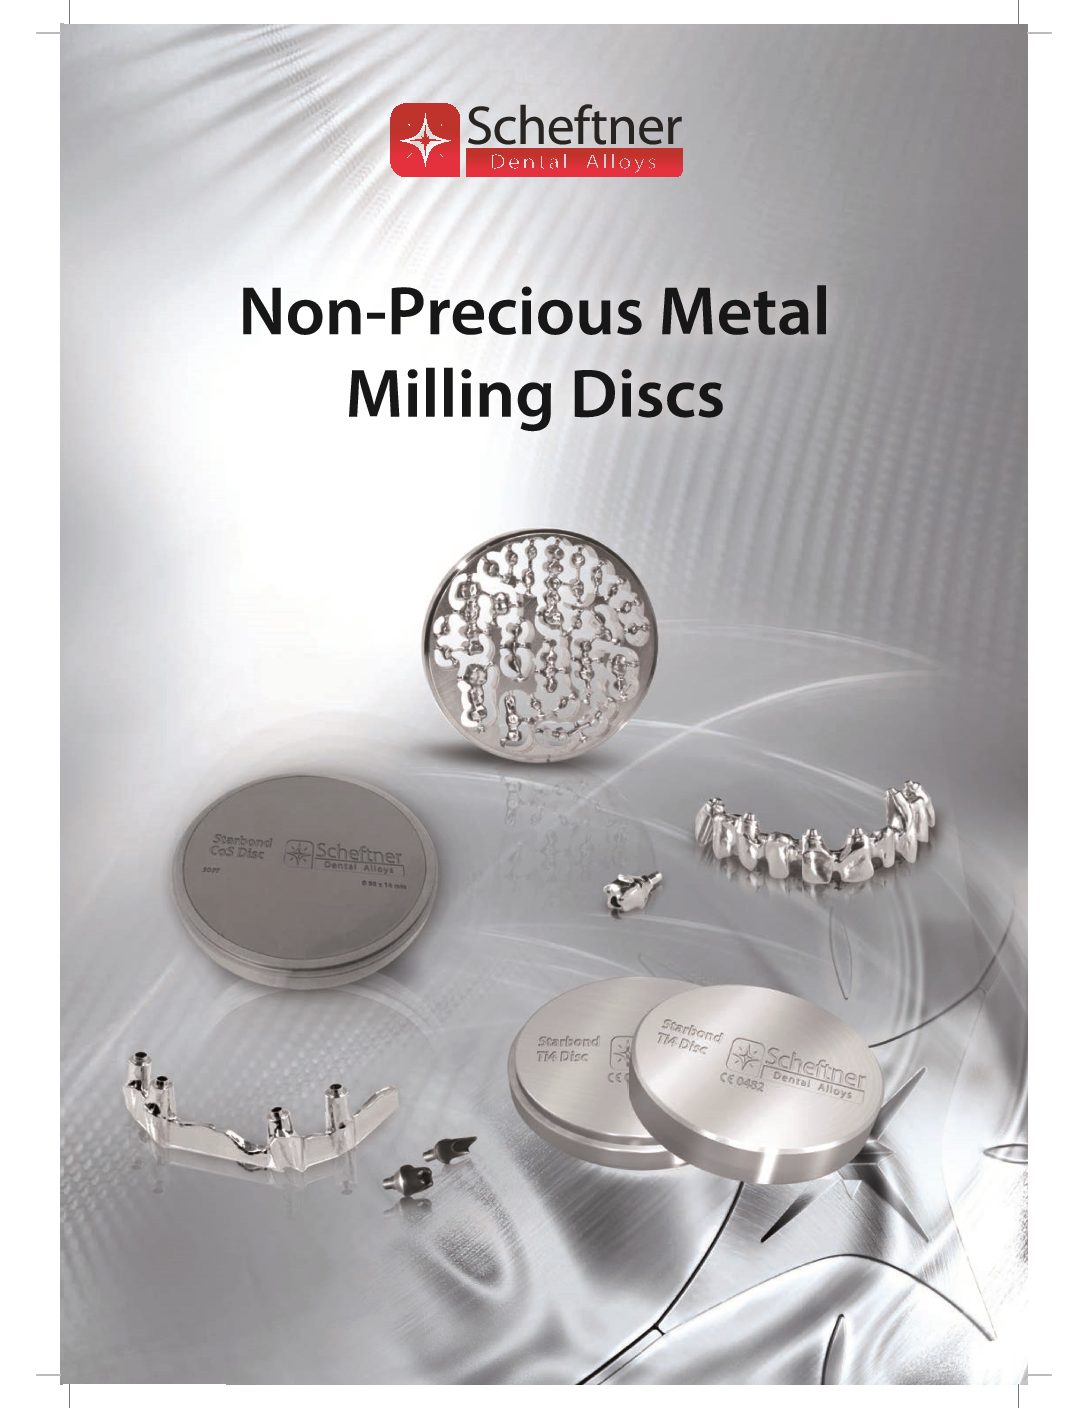 Scheftner Milling Discs